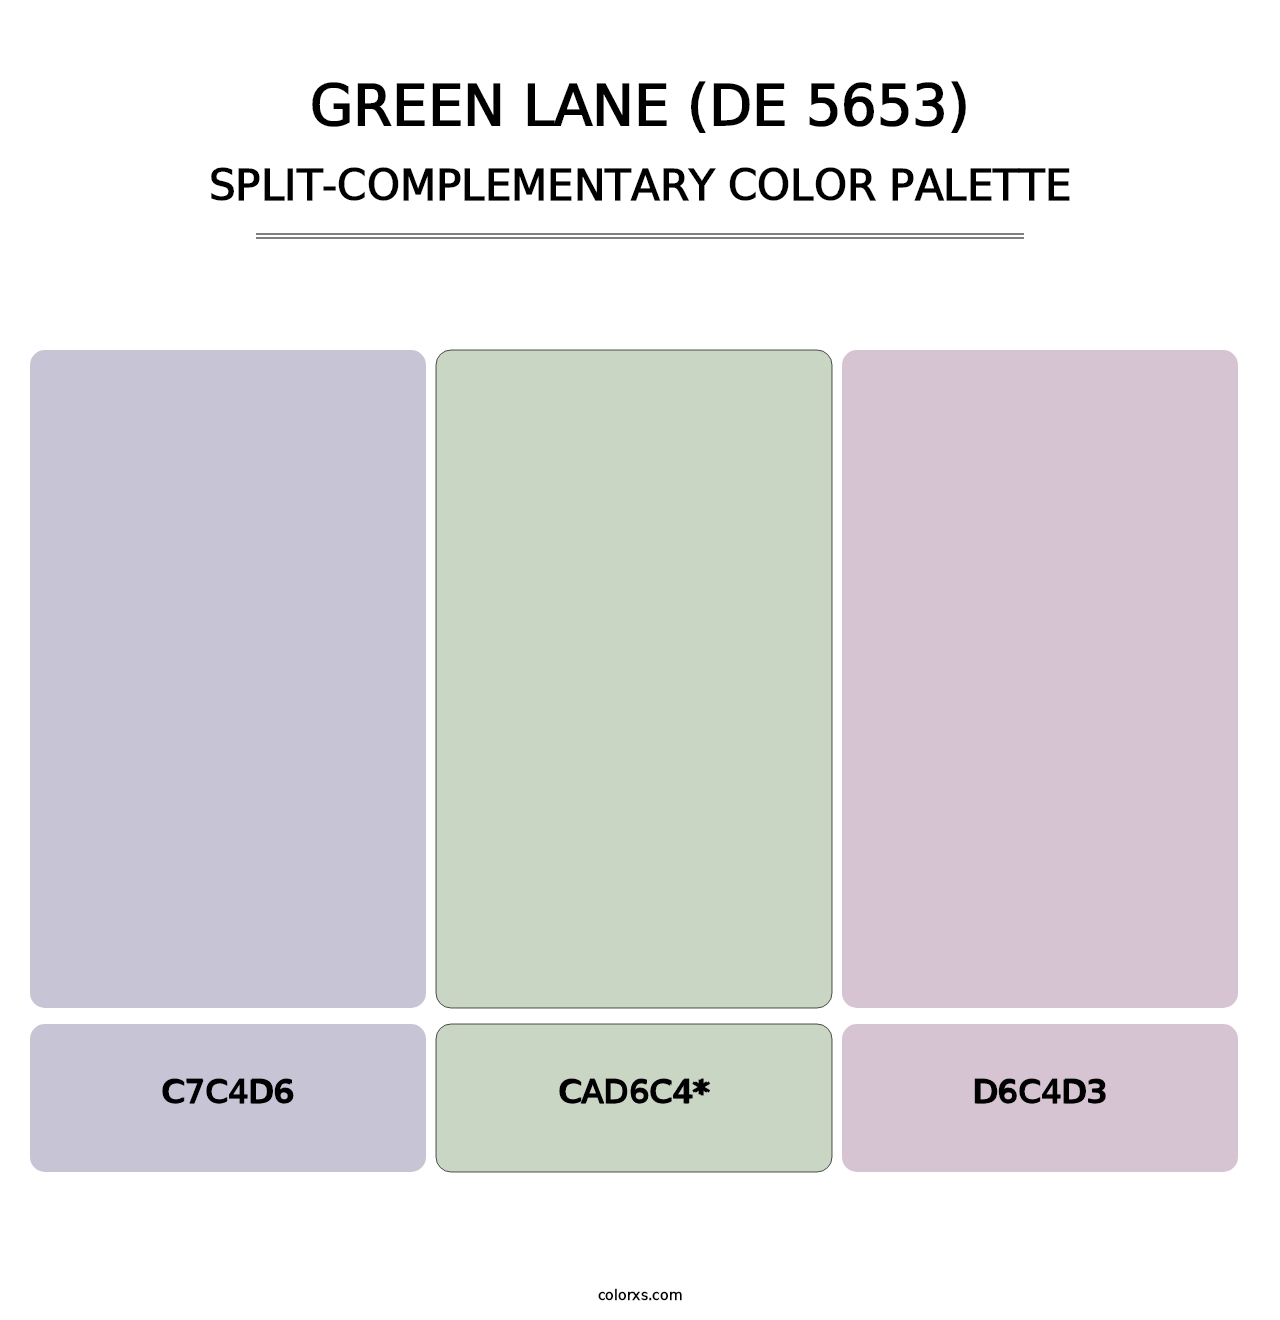 Green Lane (DE 5653) - Split-Complementary Color Palette